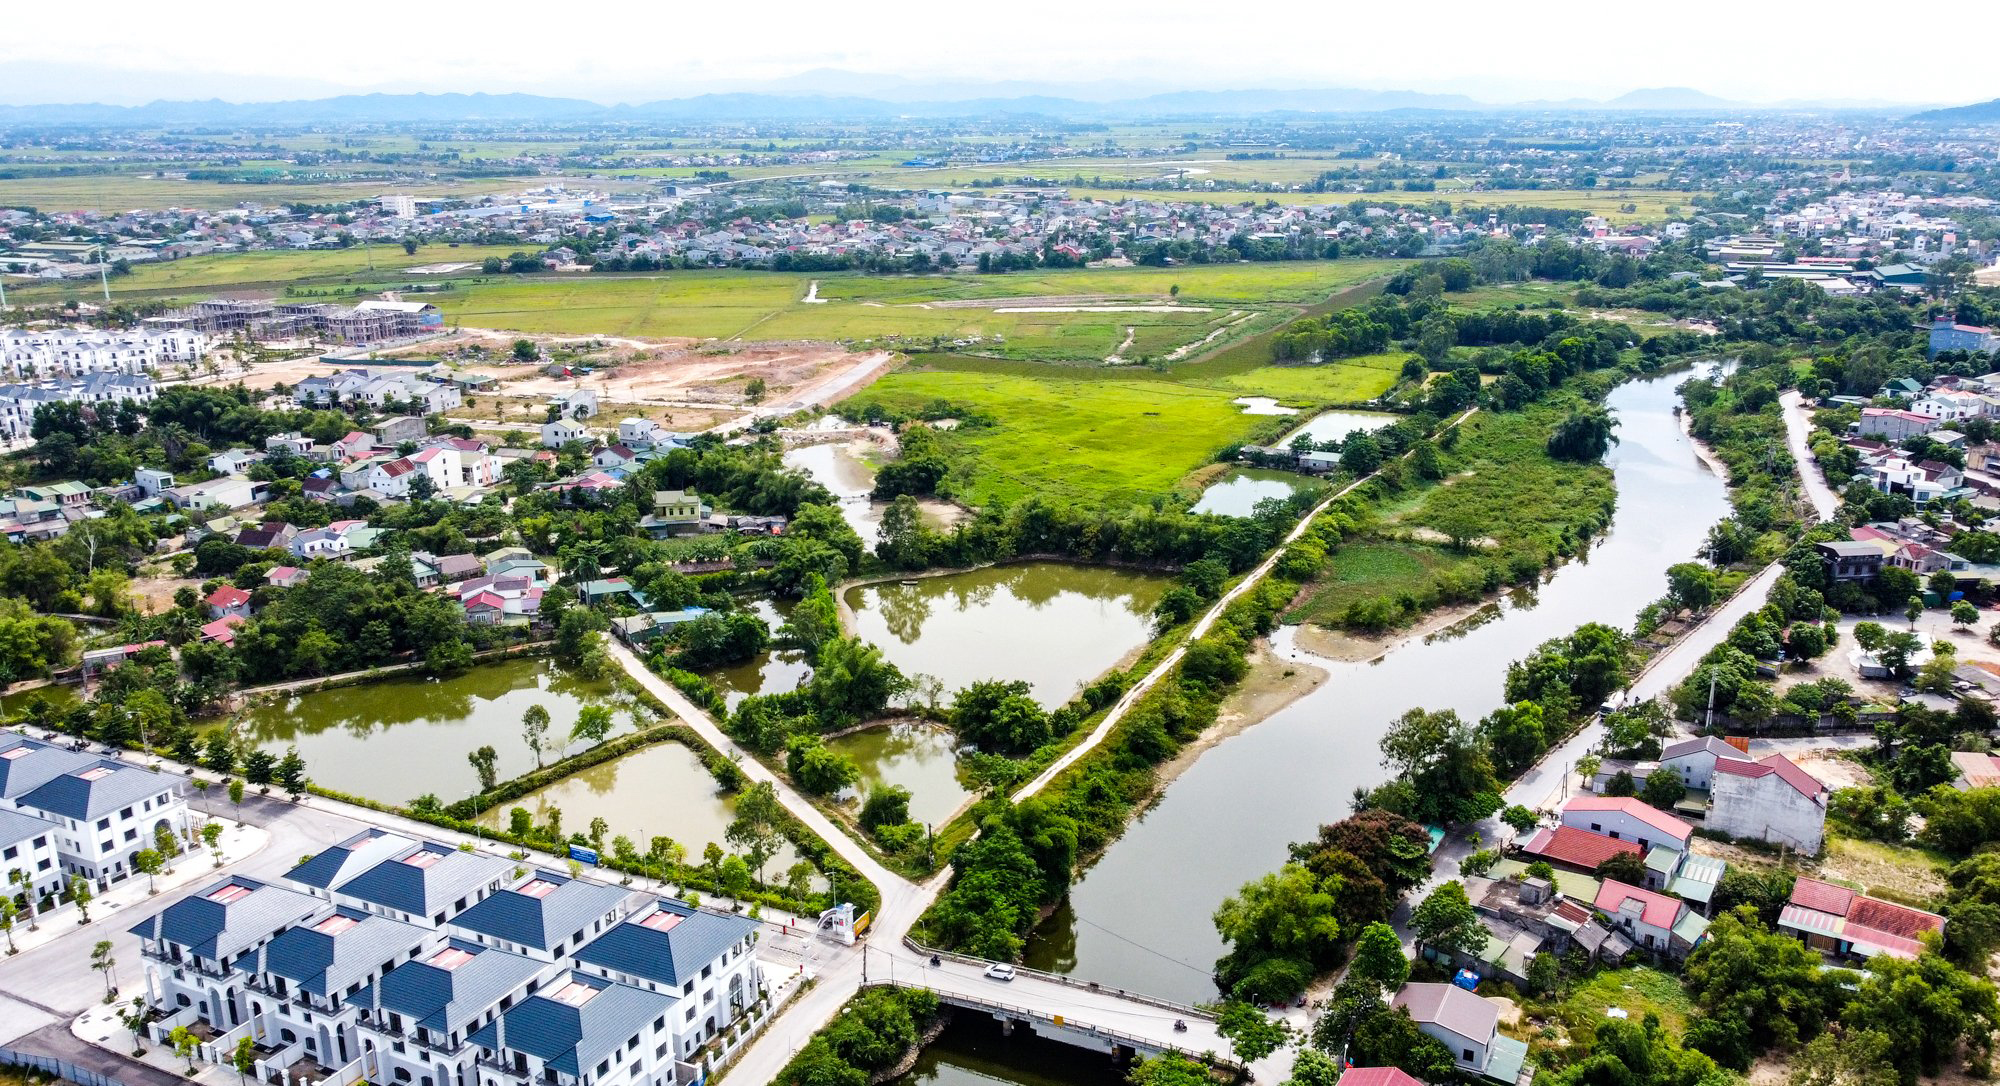 Toàn cảnh vùng đất bờ Nam sông Vinh, nơi có cụm dân dân cư khối Tân An, phường Vinh Tân và khu đất từng được quy hoạch thực hiện dự án Khu đô thị Dầu khí Nghệ An.